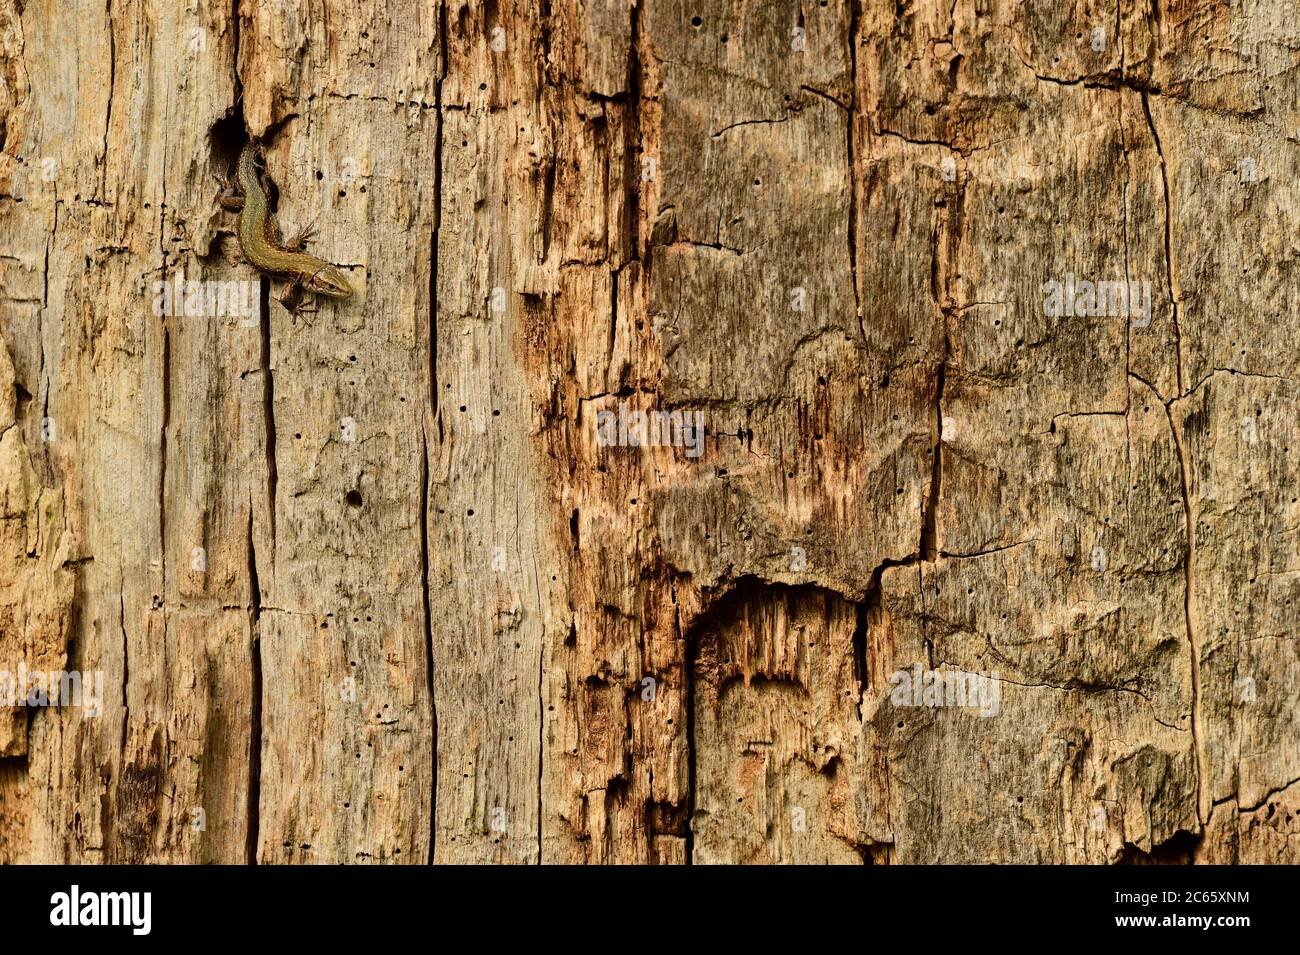 Lizard vipare vivipare (Zotoca vivipara) chasse aux insectes dans les trous de chêne, Réserve de biosphère 'Niedersächsische Elbtalaue' / Vallée de l'Elbe de la Basse-Saxe, Allemagne Banque D'Images